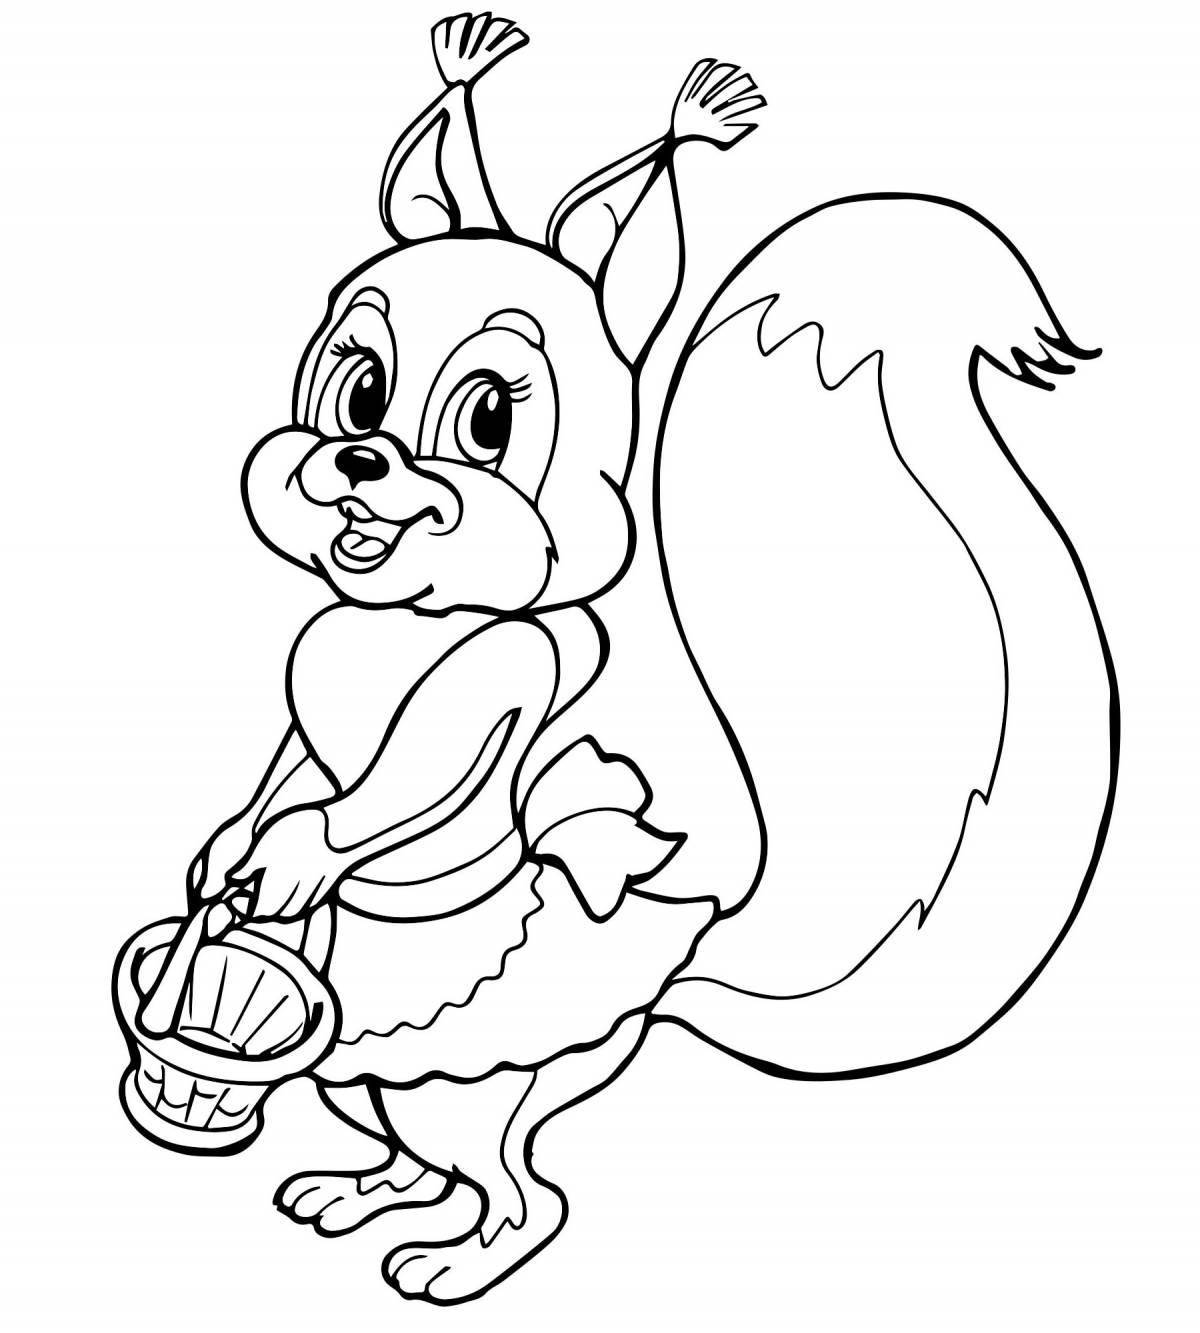 Coloring page joyful winter squirrel